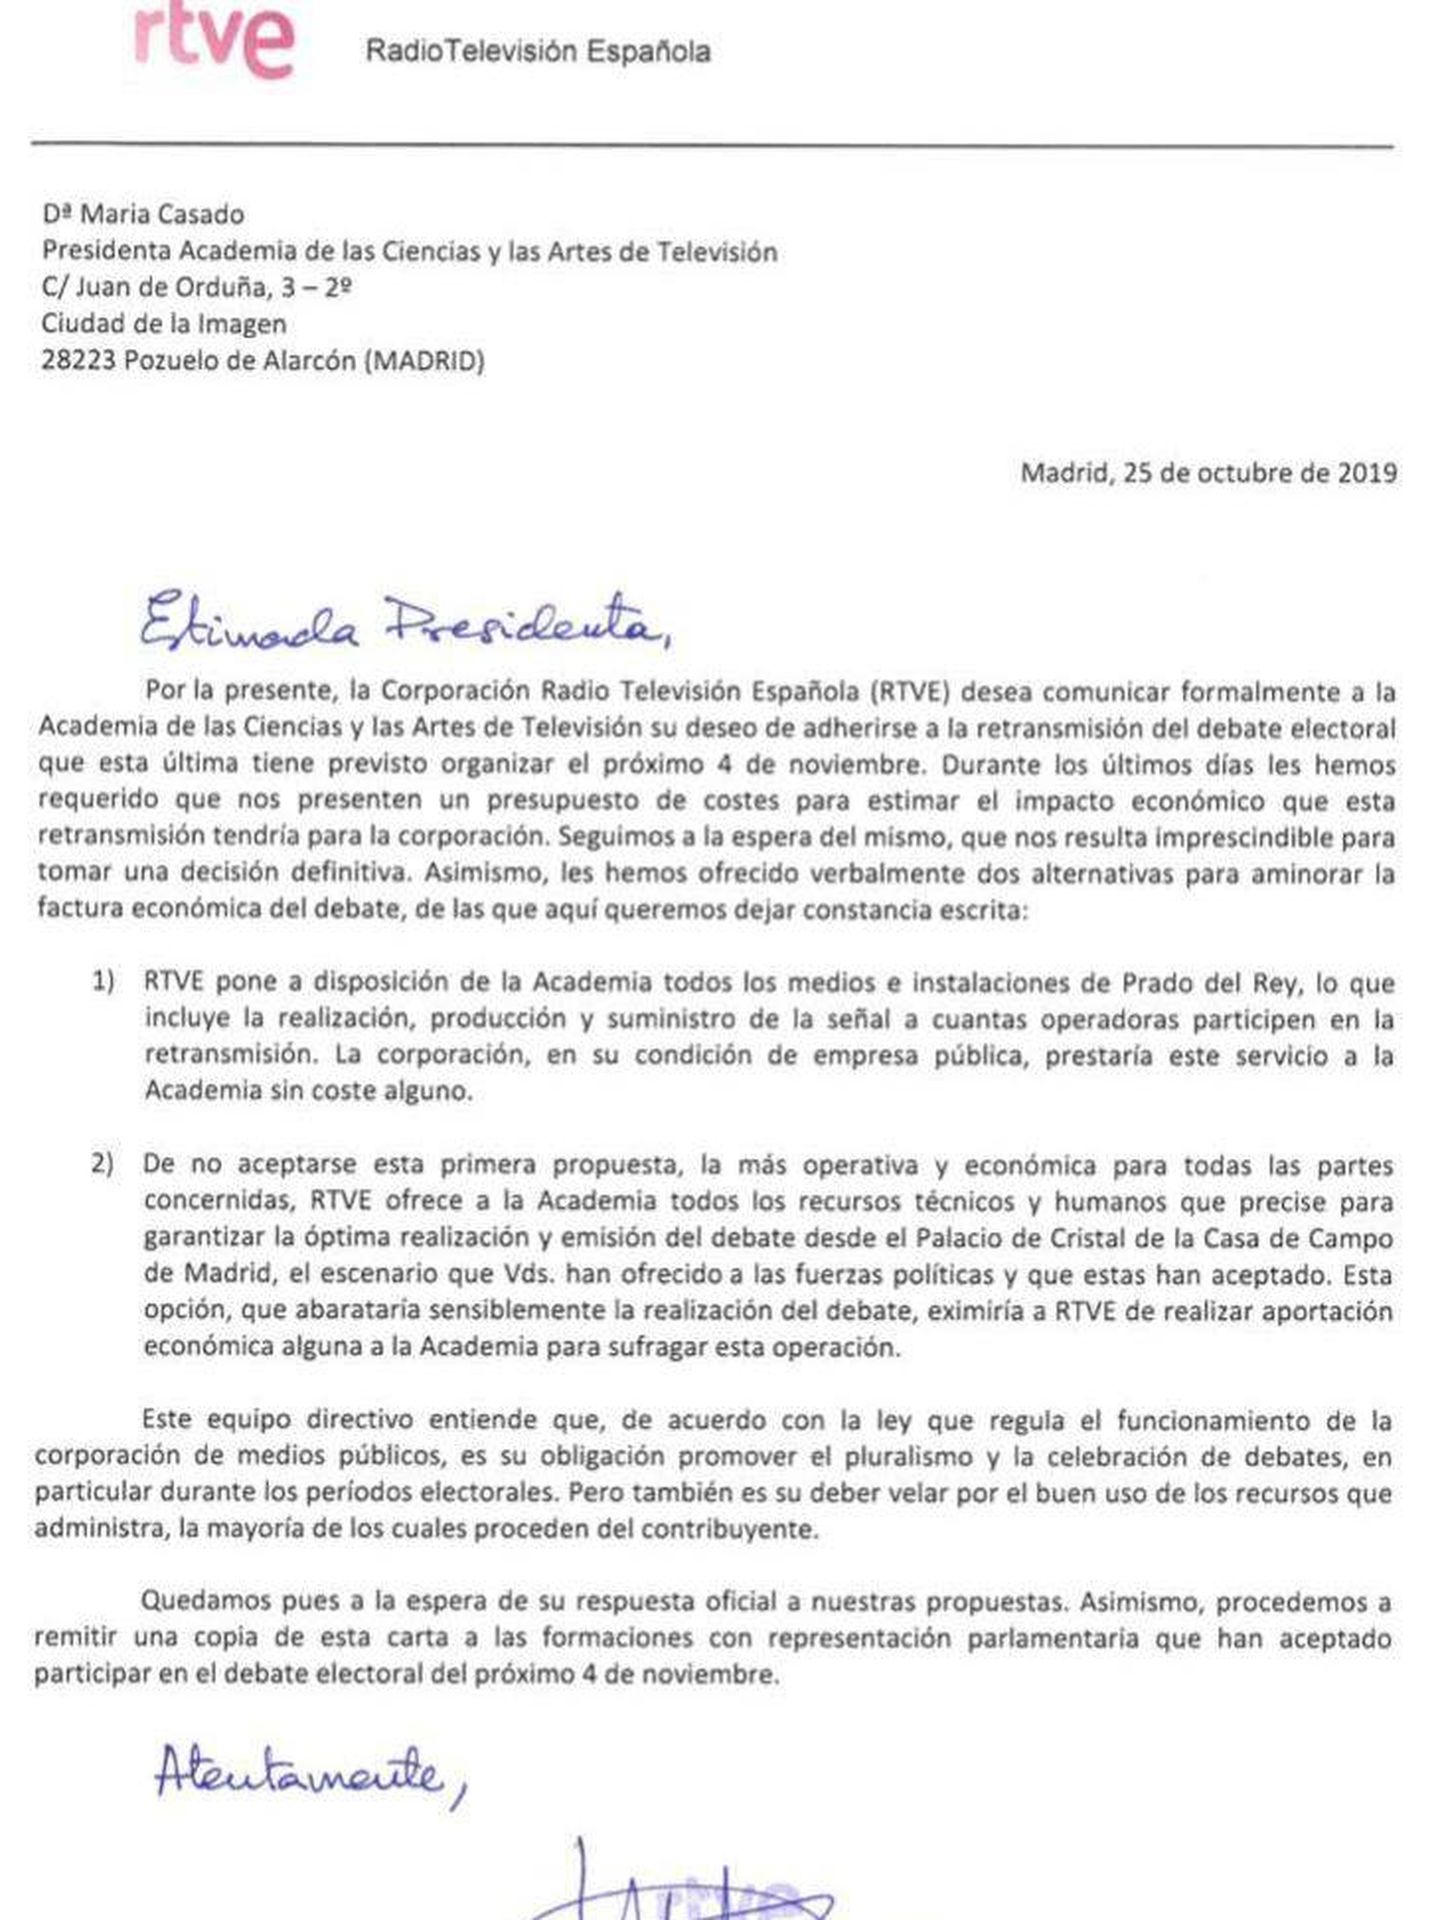 Consulte aquí la carta del director general corporativo de RTVE, Federico Montero, a la presidenta de la ATV, María Casado, sobre la retransmisión del único debate electoral del 10-N